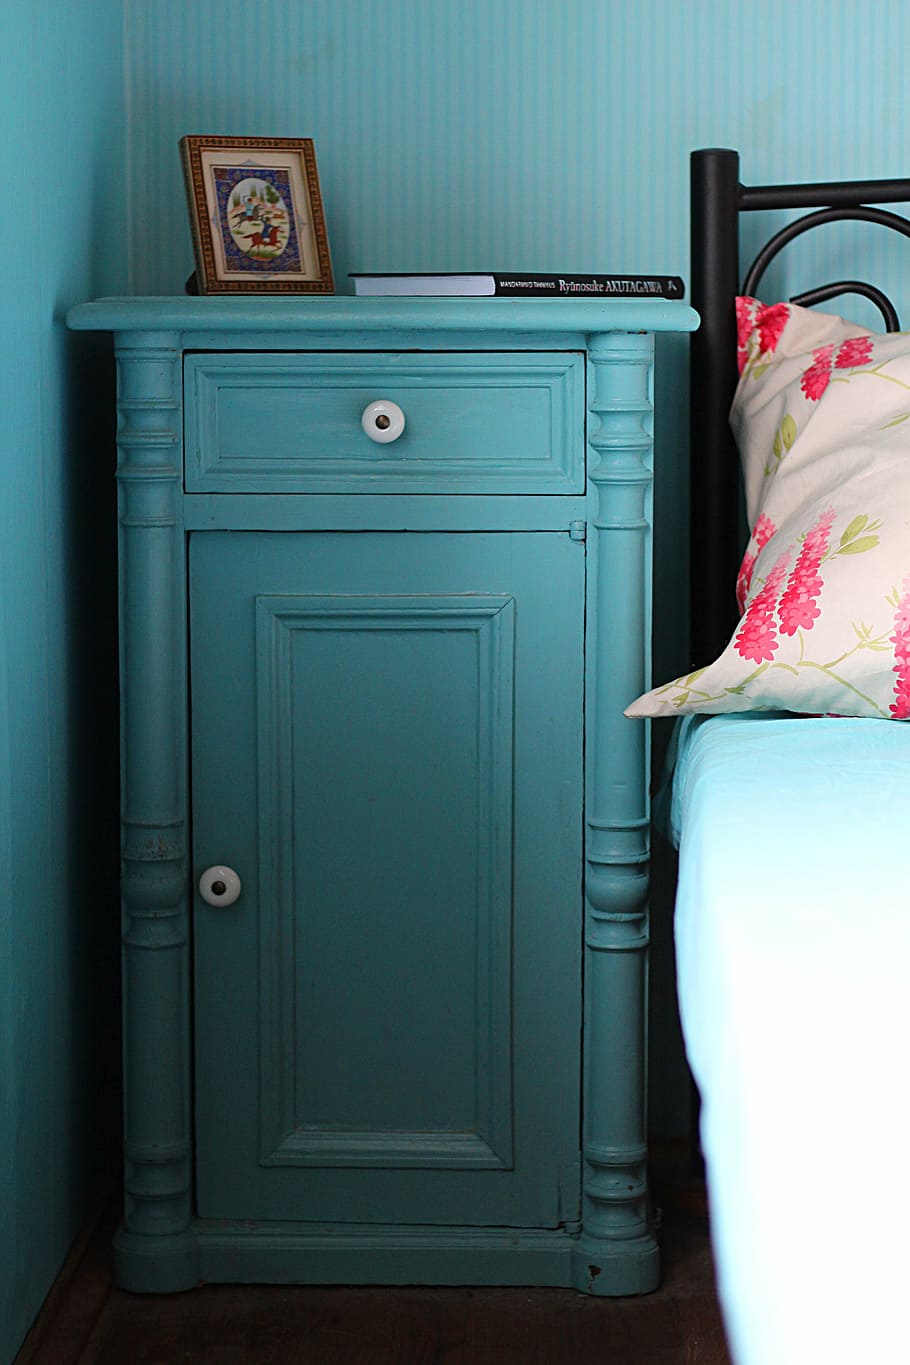 biru, kayu, kabinet, di samping, hitam, tempat tidur, meja, kamar tidur, samping tempat tidur, di dalam ruangan